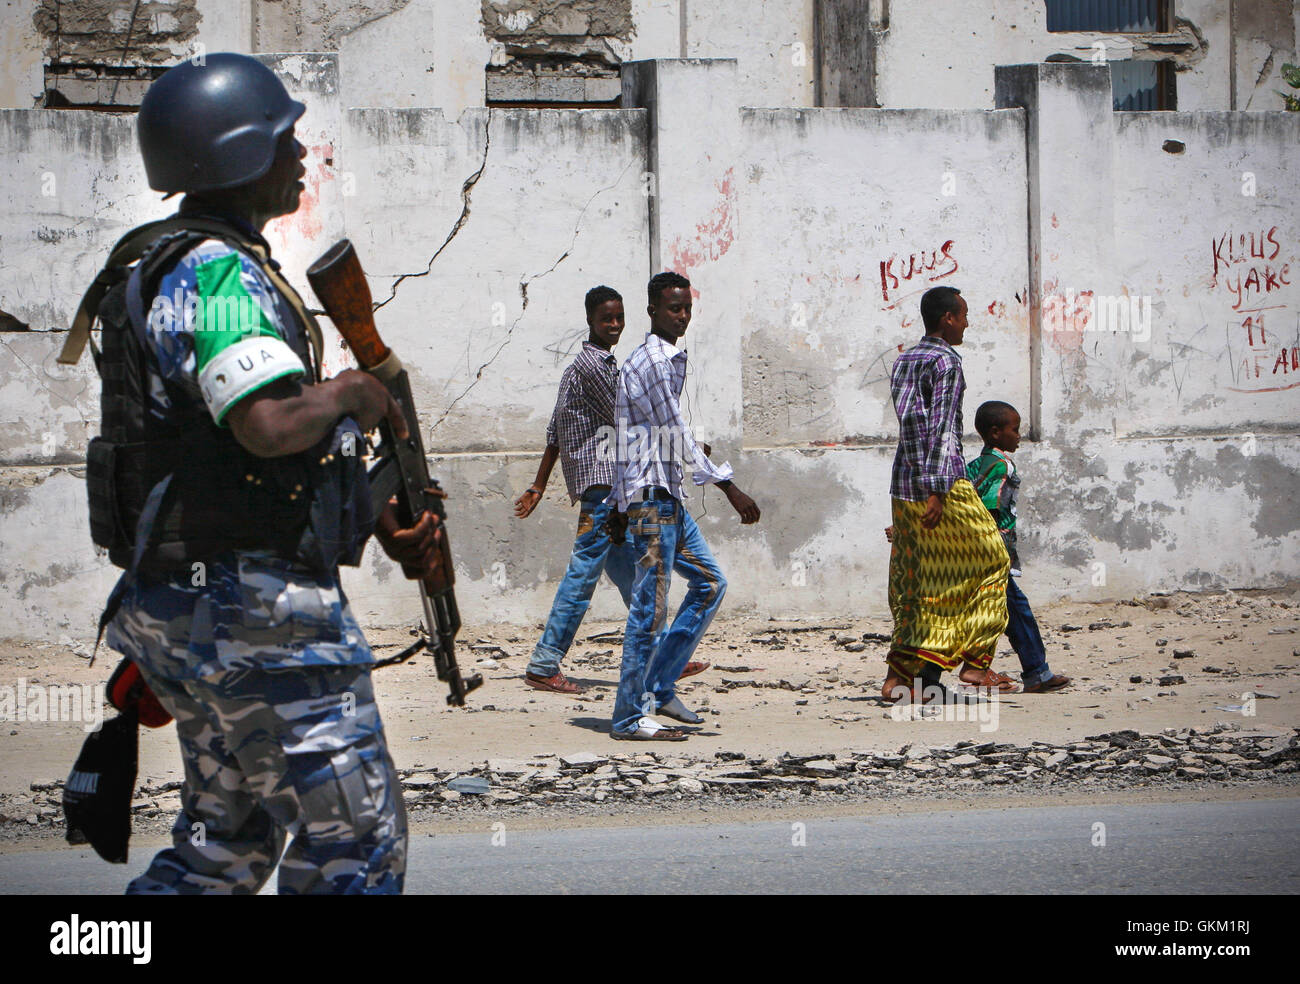 SOMALIA, MOGADISHU: En un panfleto foto tomada y liberado por el Grupo Africano Europea-estados unidas, Equipo de Apoyo a la información 09 de noviembre, jóvenes somalíes mirar mientras caminan más allá de un oficial de la policía de Uganda que sirve como parte de una unidad de policía constituida (FPU), con la misión de la unión de la Unión Africana en Somalia (AMISOM) camina pasado durante una patrulla a pie en la Kaa'ran el distrito en la capital somalí de Mogadishu. La AMISOM FPUs están colaborando con sus homólogos de la Policía Somalí (SPF) para ayudar a proporcionar seguridad en Mogadishu, además de la capacitación y asesoramiento de la SPF en técnicas policiales y prácticas. Foto de stock